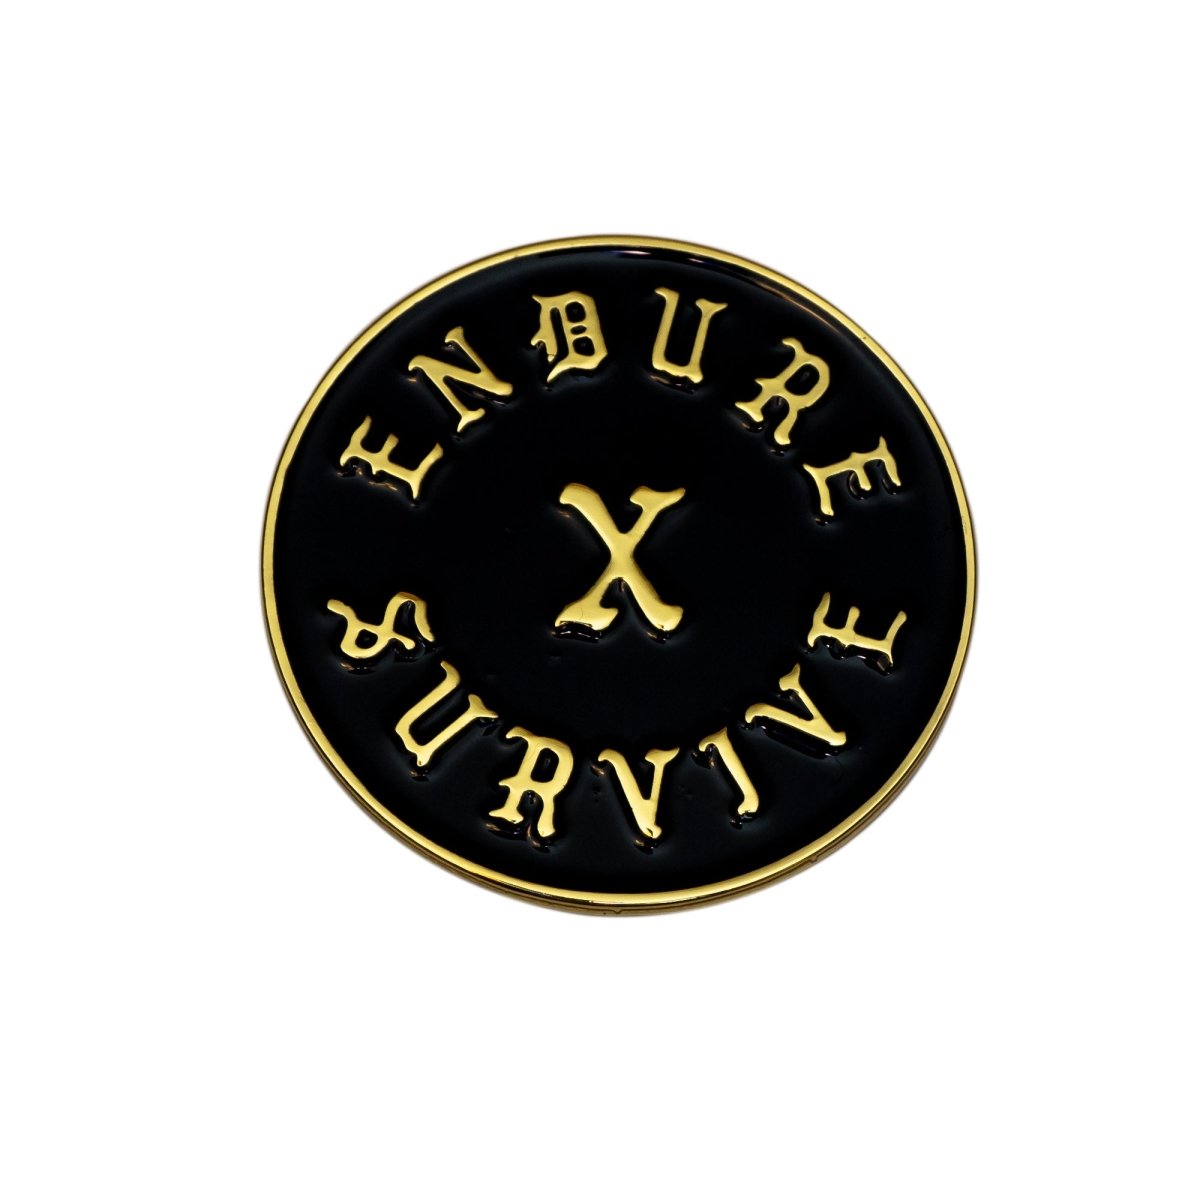 Endure X Survive Pin - Enamel Pin - Pretty Bad Co.